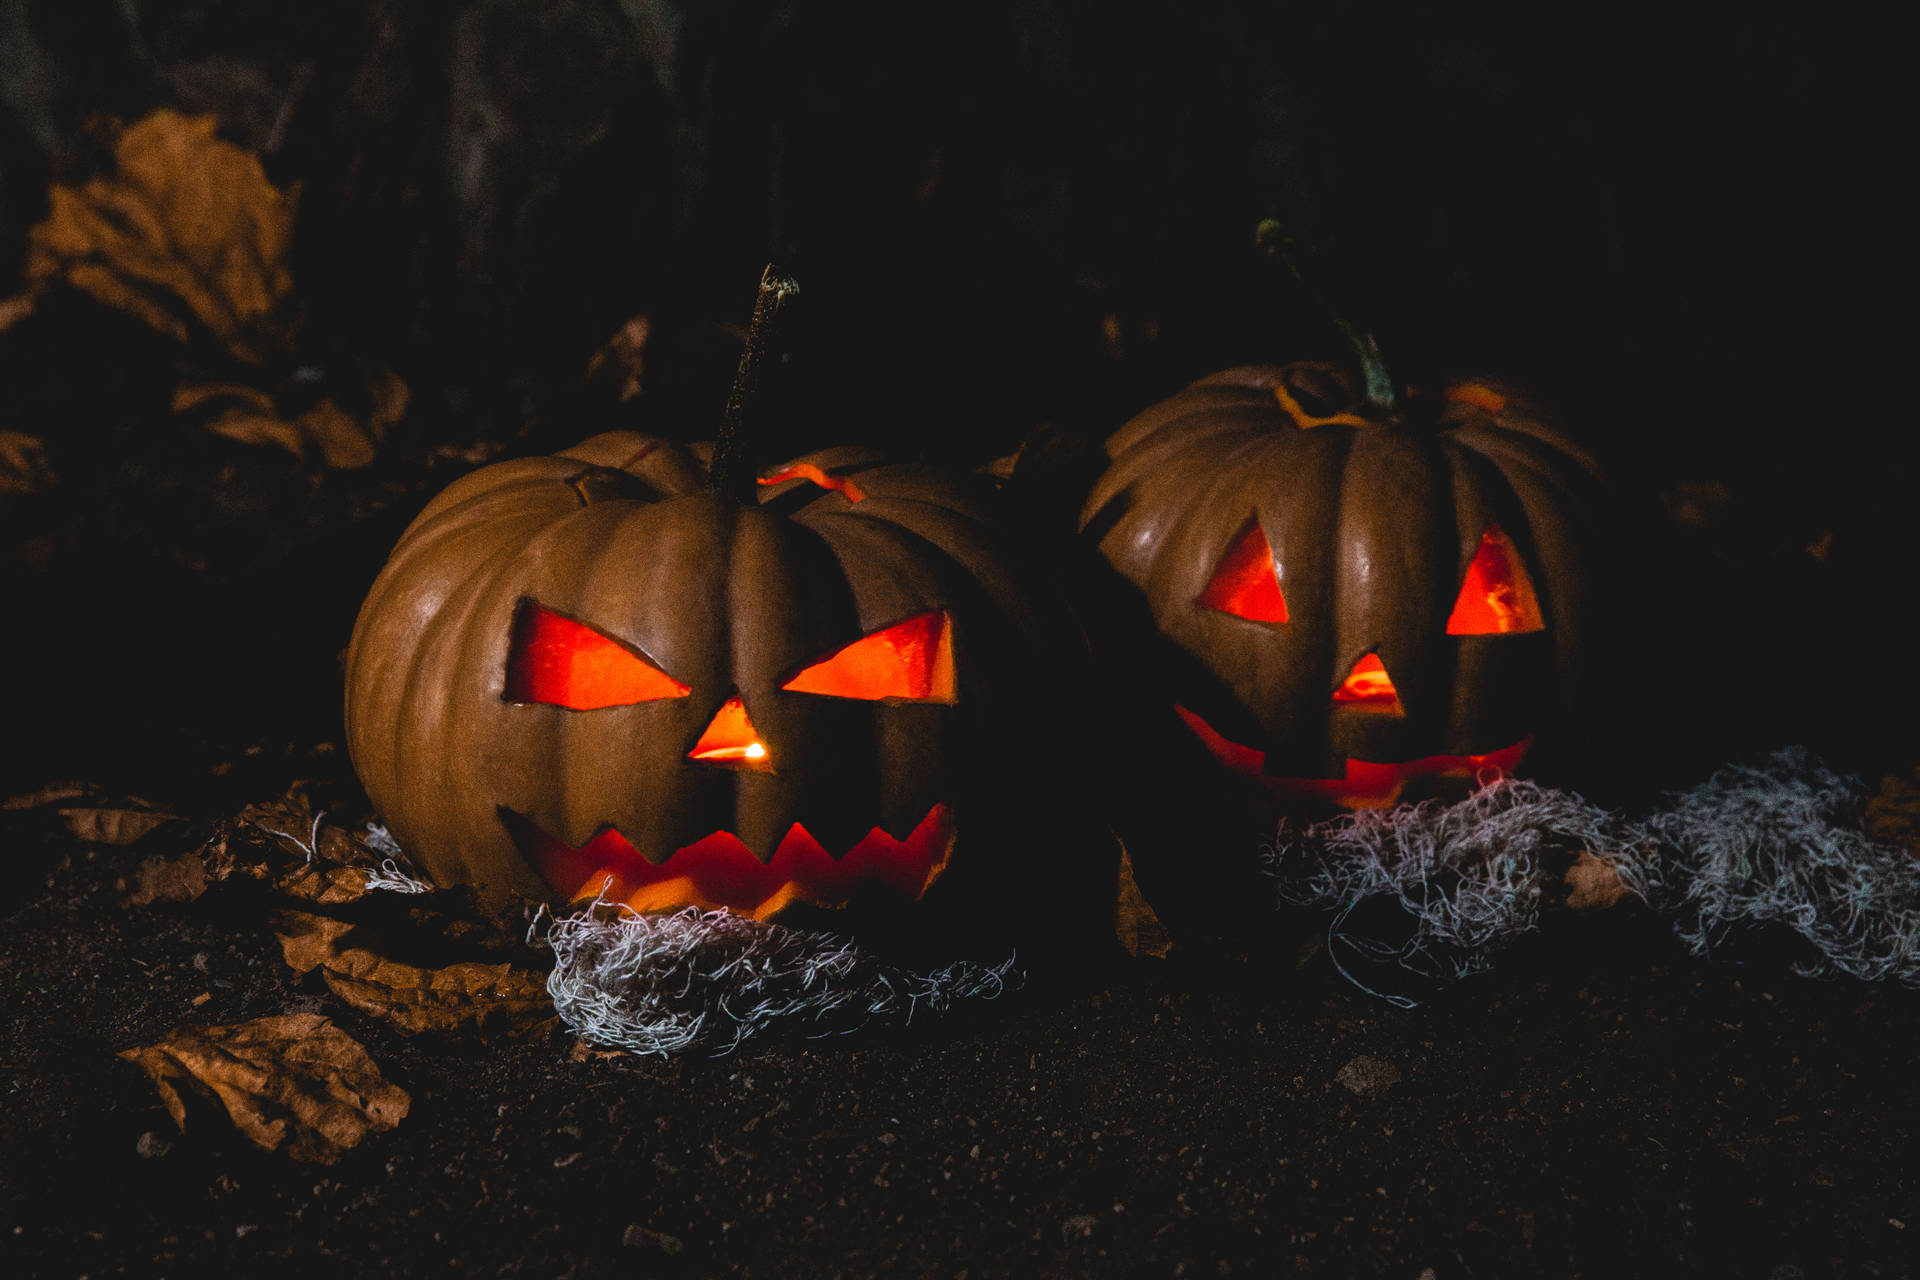 “A Spooky Pumpkin for a Frightening Halloween” Wallpaper